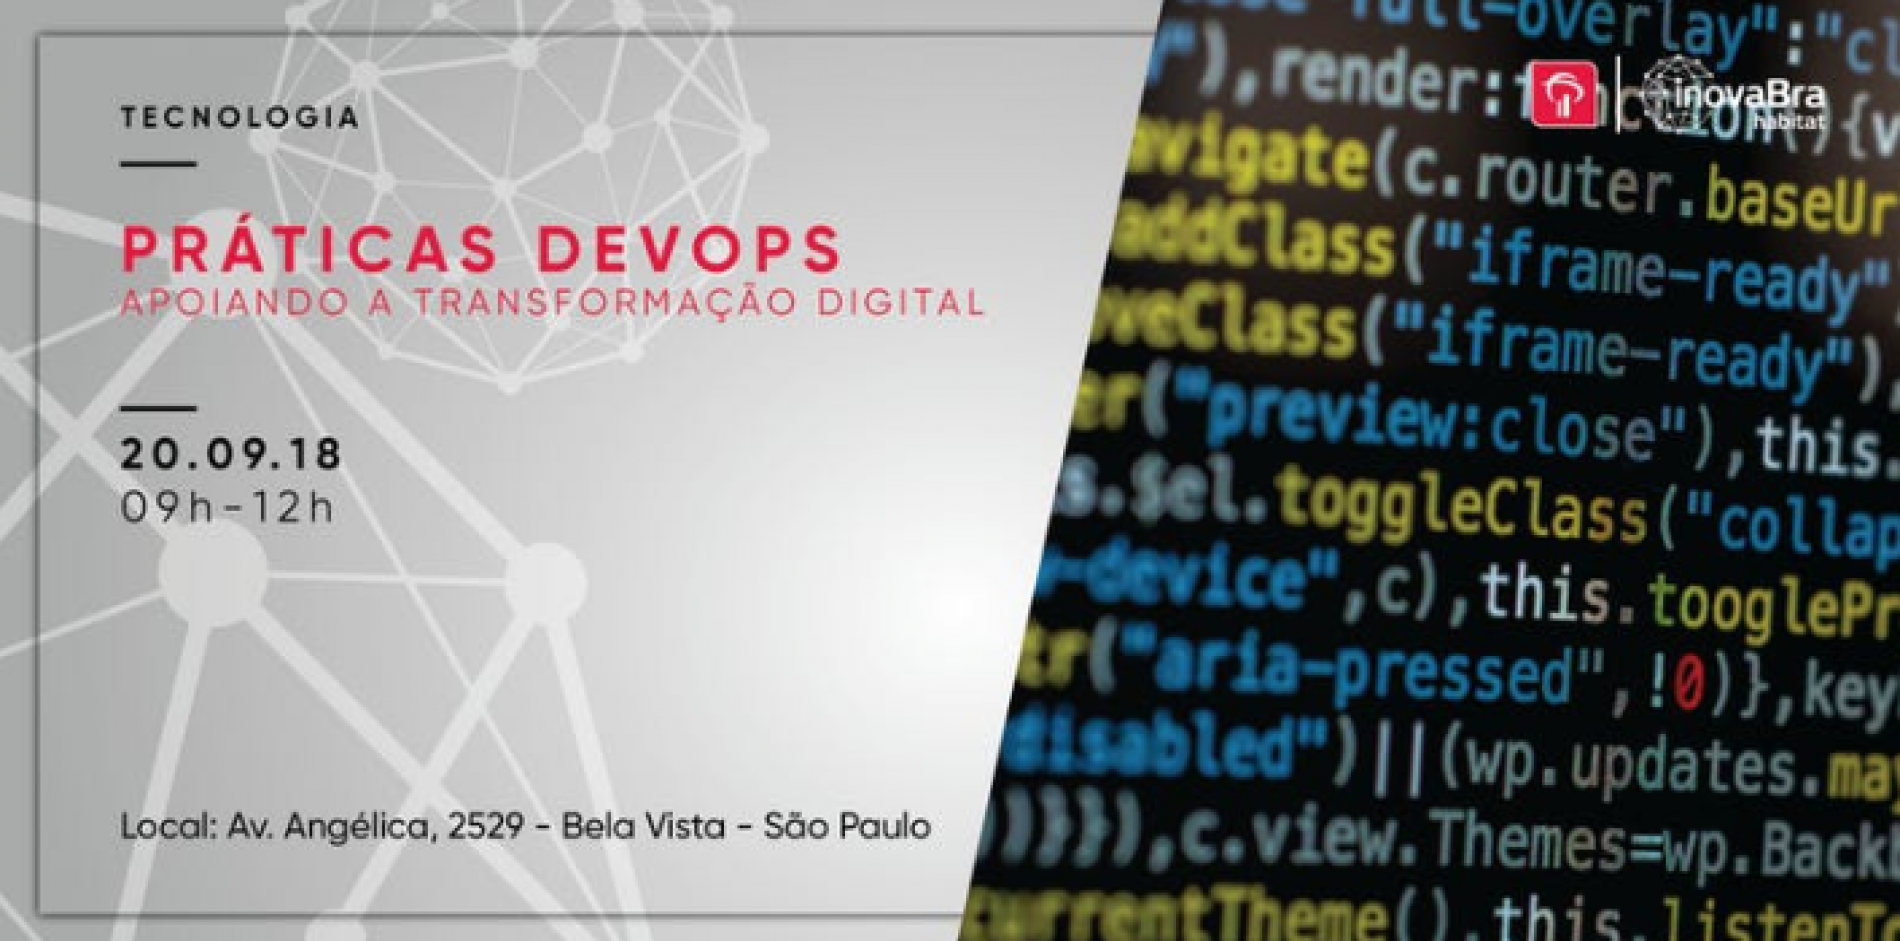 Workshop “Práticas DevOps apoiando a transformação digital”